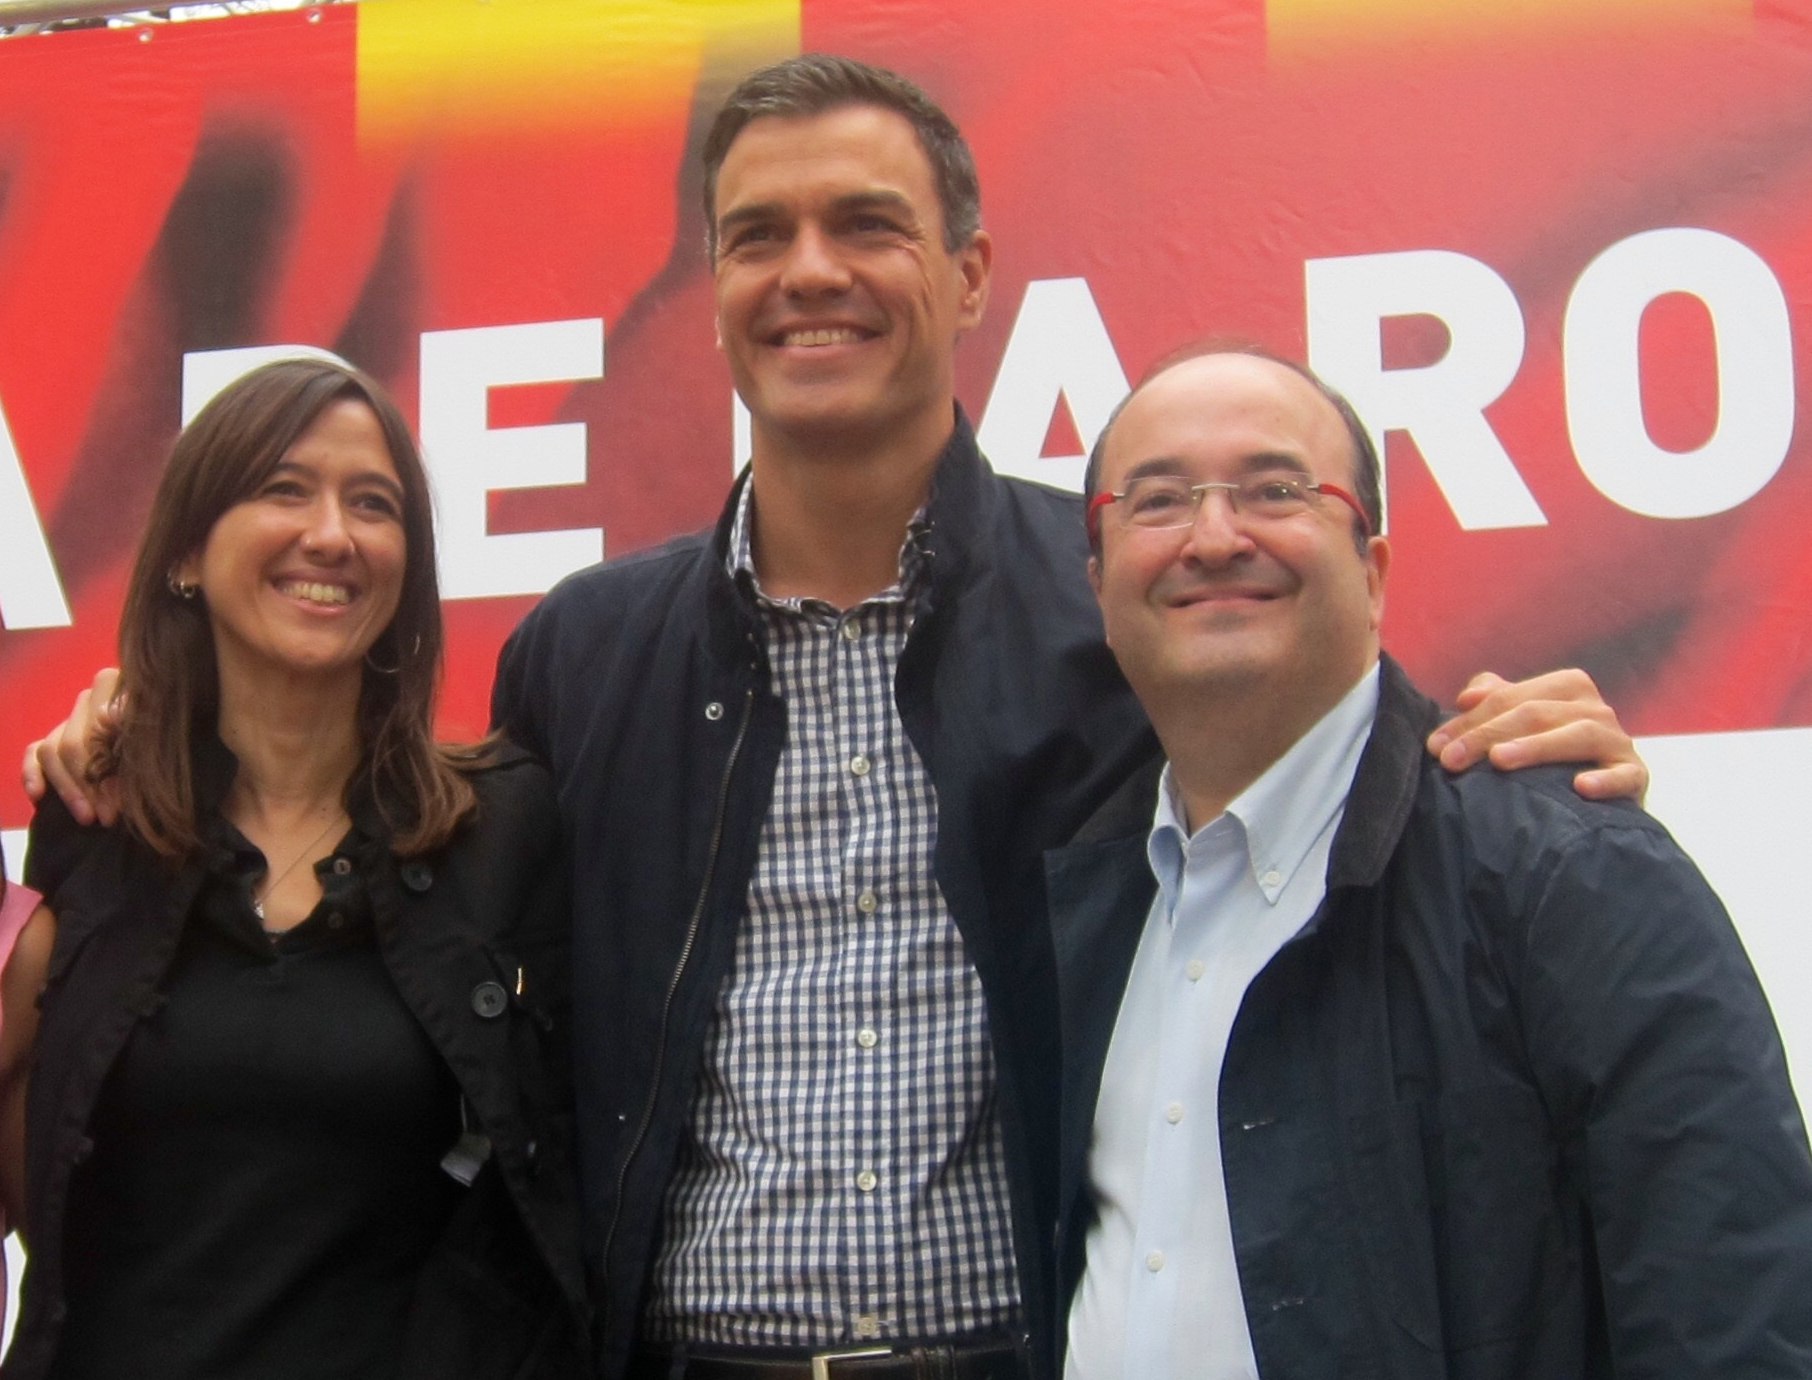 Iceta o Parlon: el PSC escoge a su candidato para 2017 de espaldas al PSOE